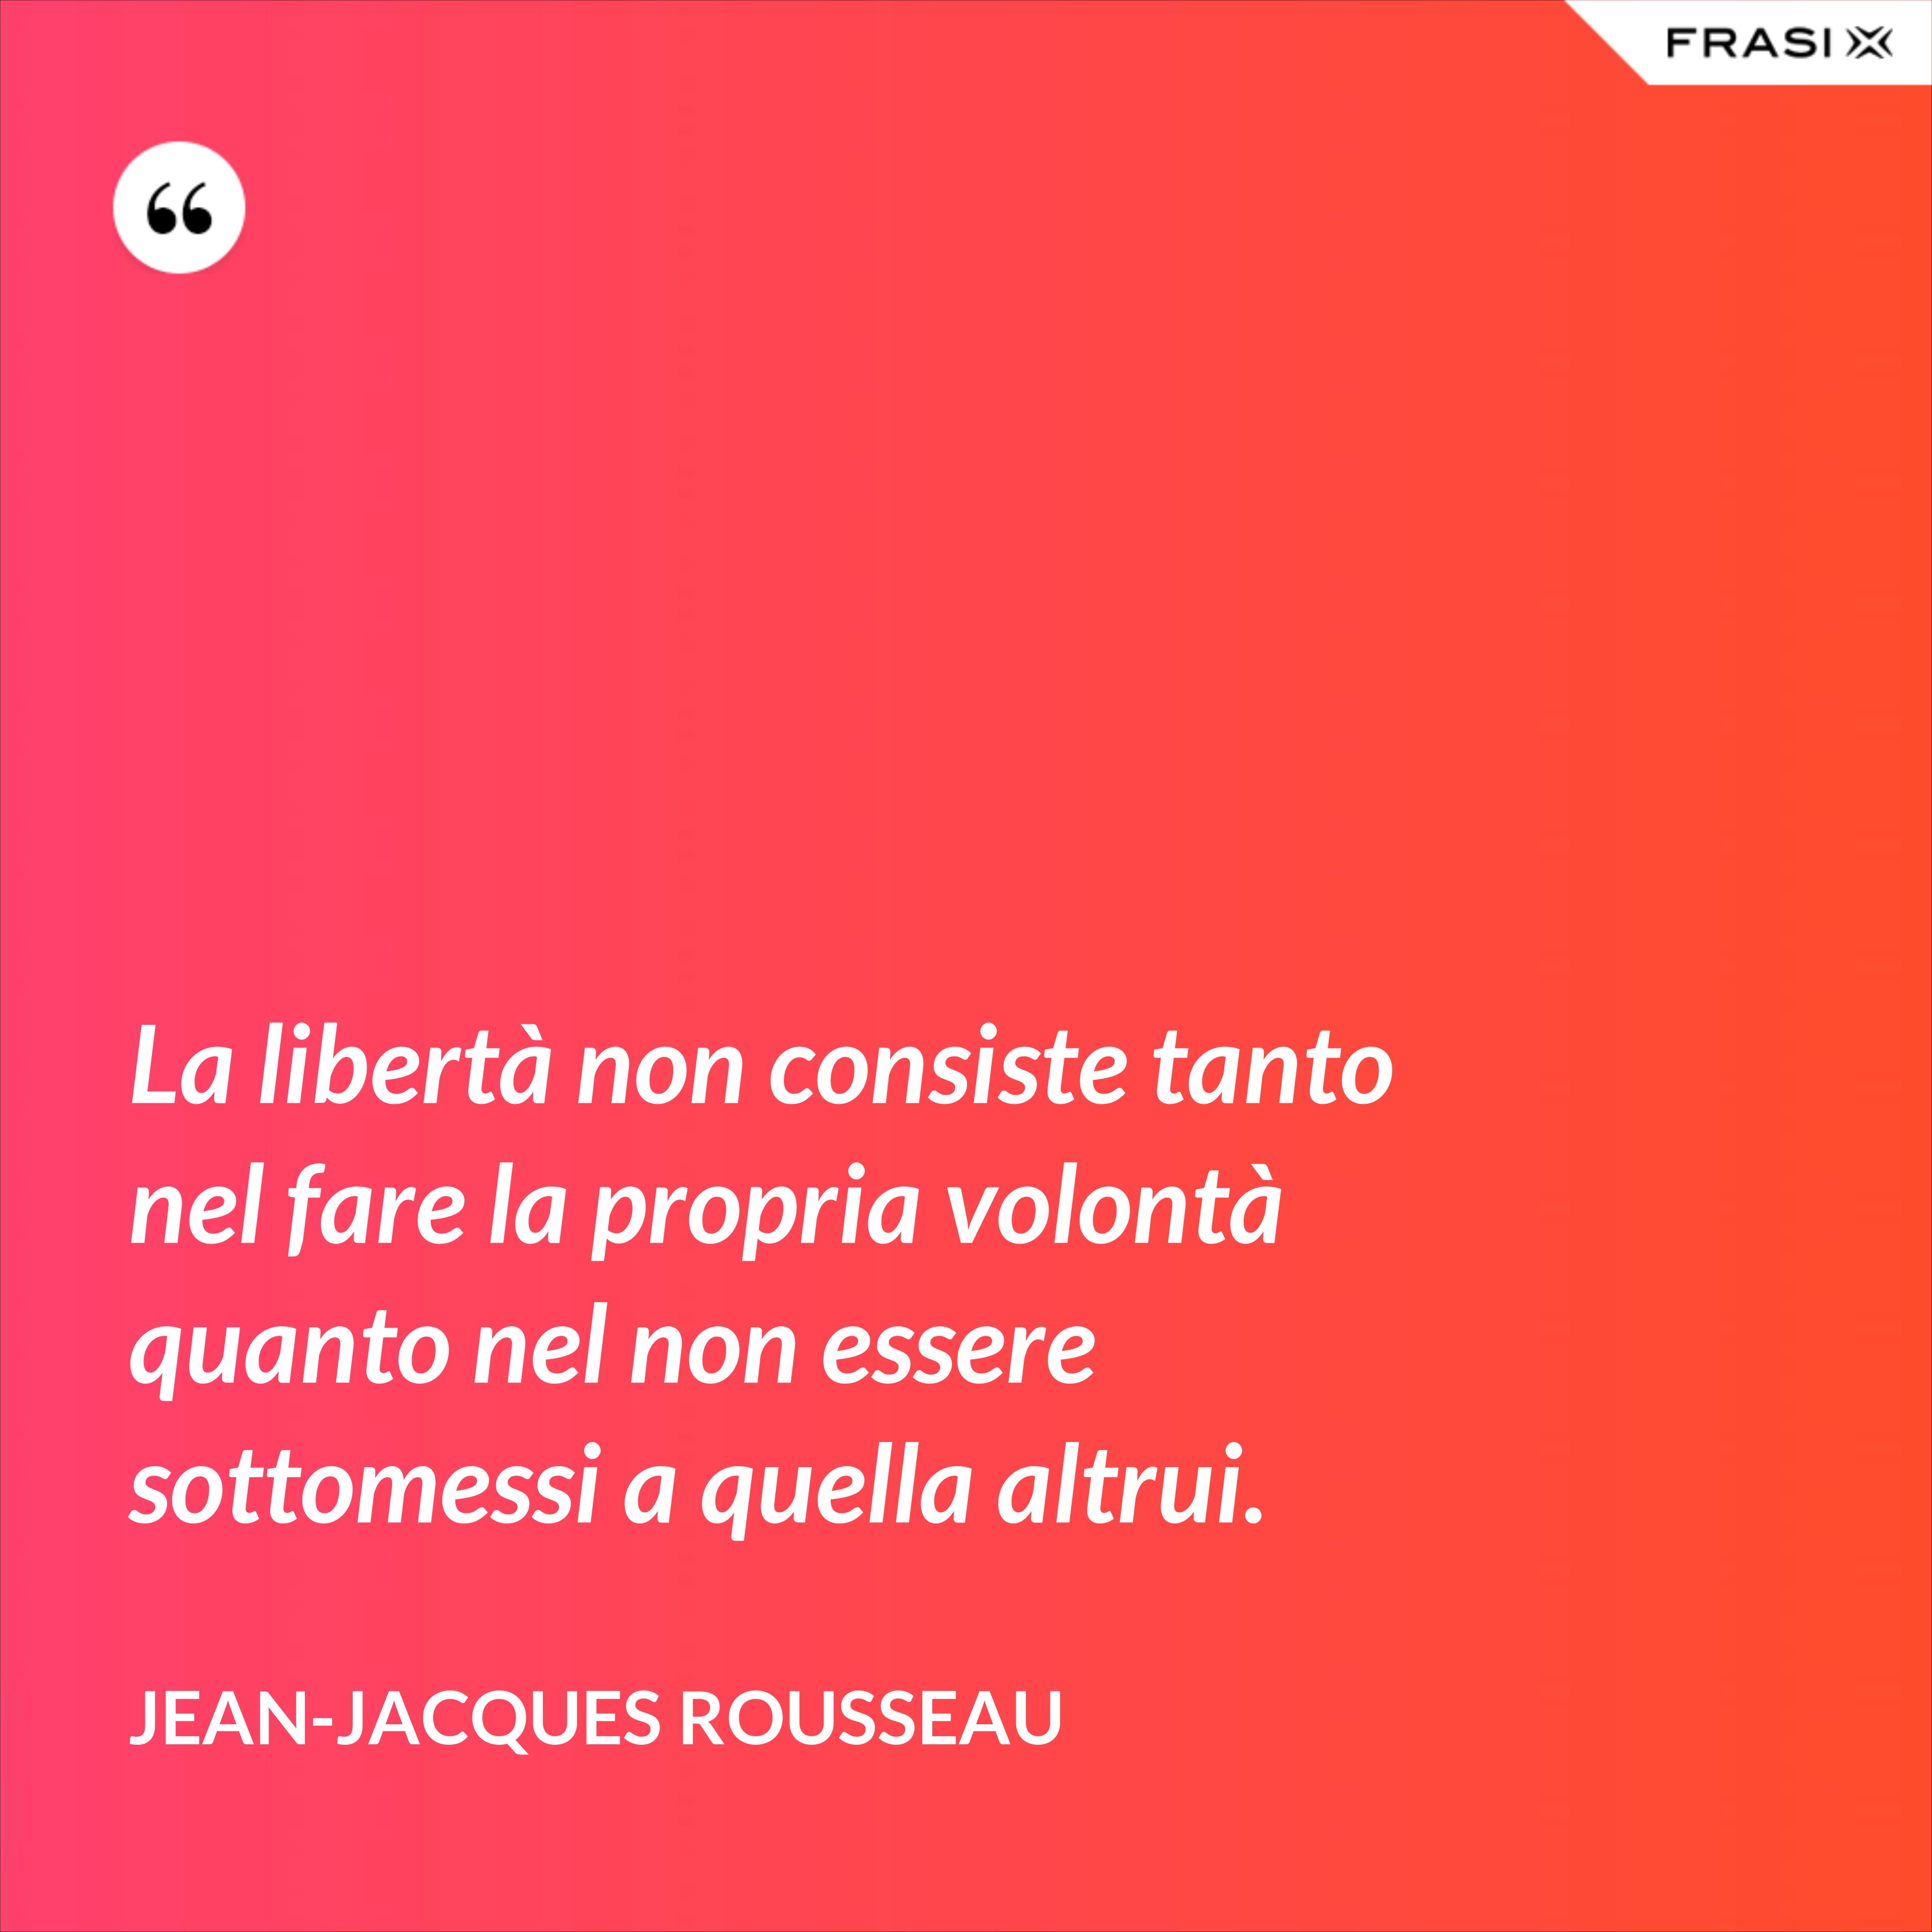 La libertà non consiste tanto nel fare la propria volontà quanto nel non essere sottomessi a quella altrui. - Jean-Jacques Rousseau